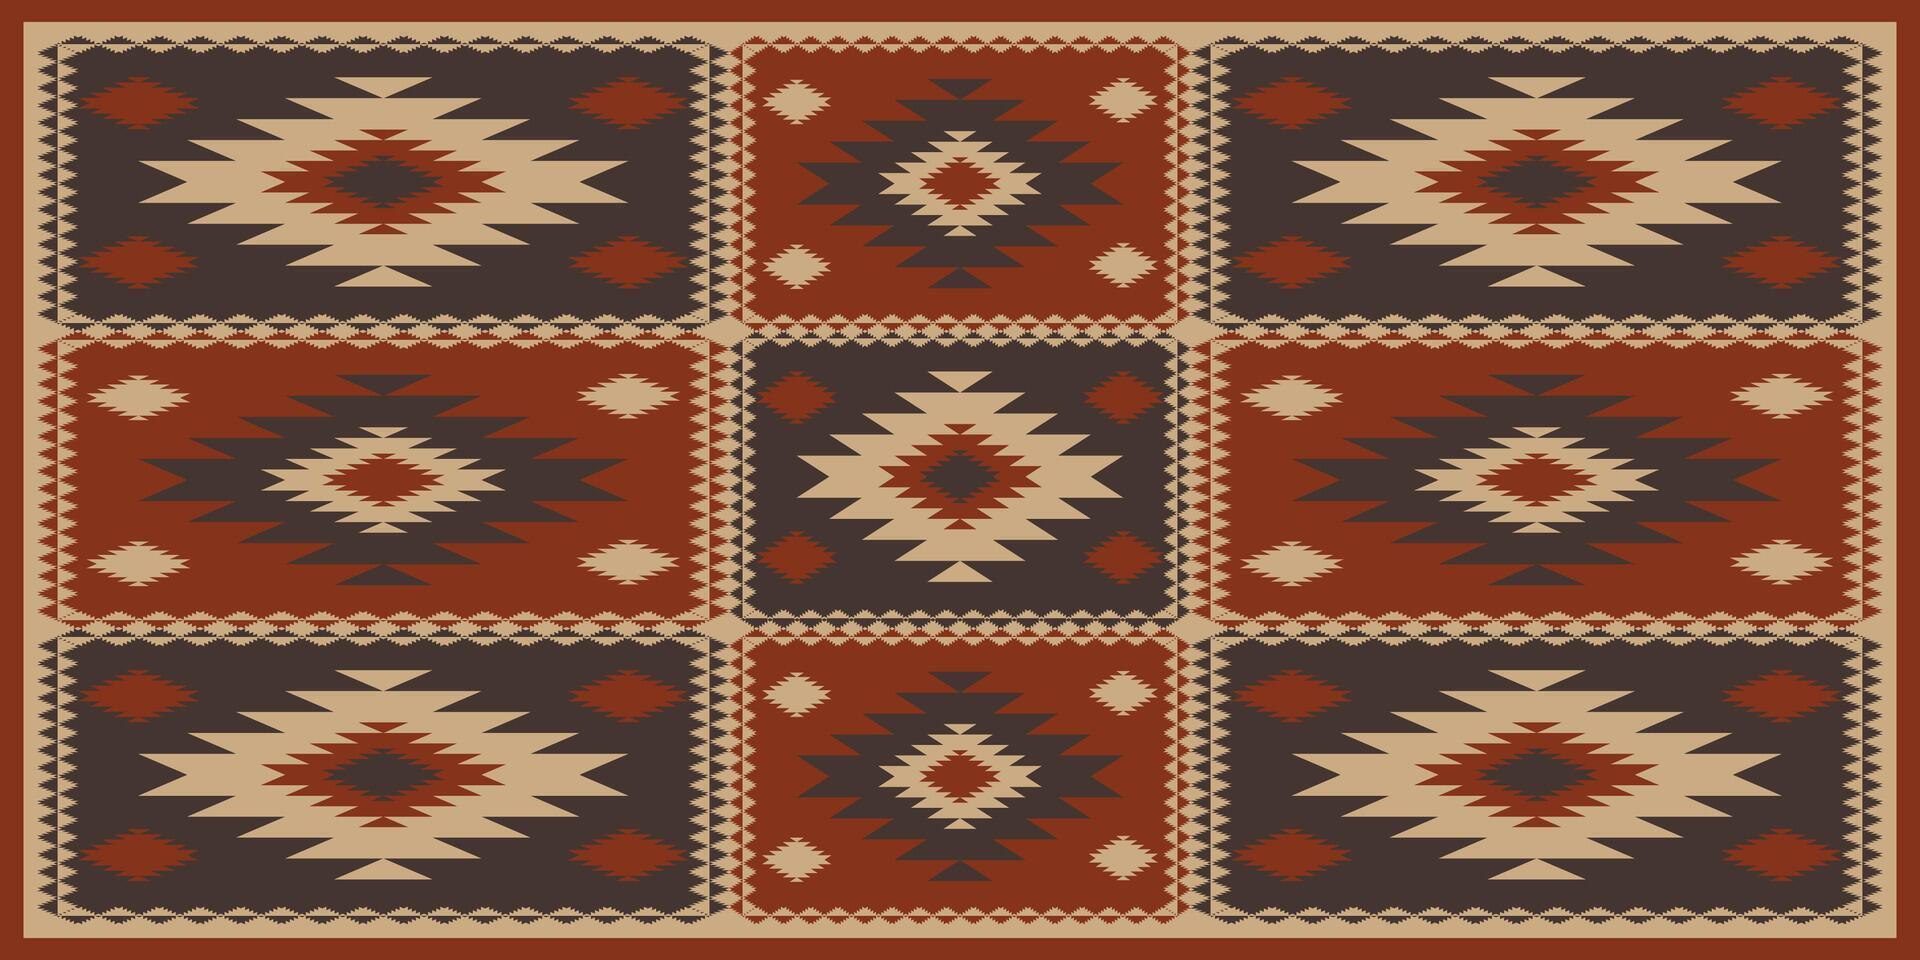 aztec zuidwesten lapwerk patroon. zuidwestelijk Navajo meetkundig lapwerk patroon rustiek Boheems stijl. etnisch meetkundig patroon gebruik voor tapijt, tafelkleed, dekbed, kussen, bekleding, enz. vector